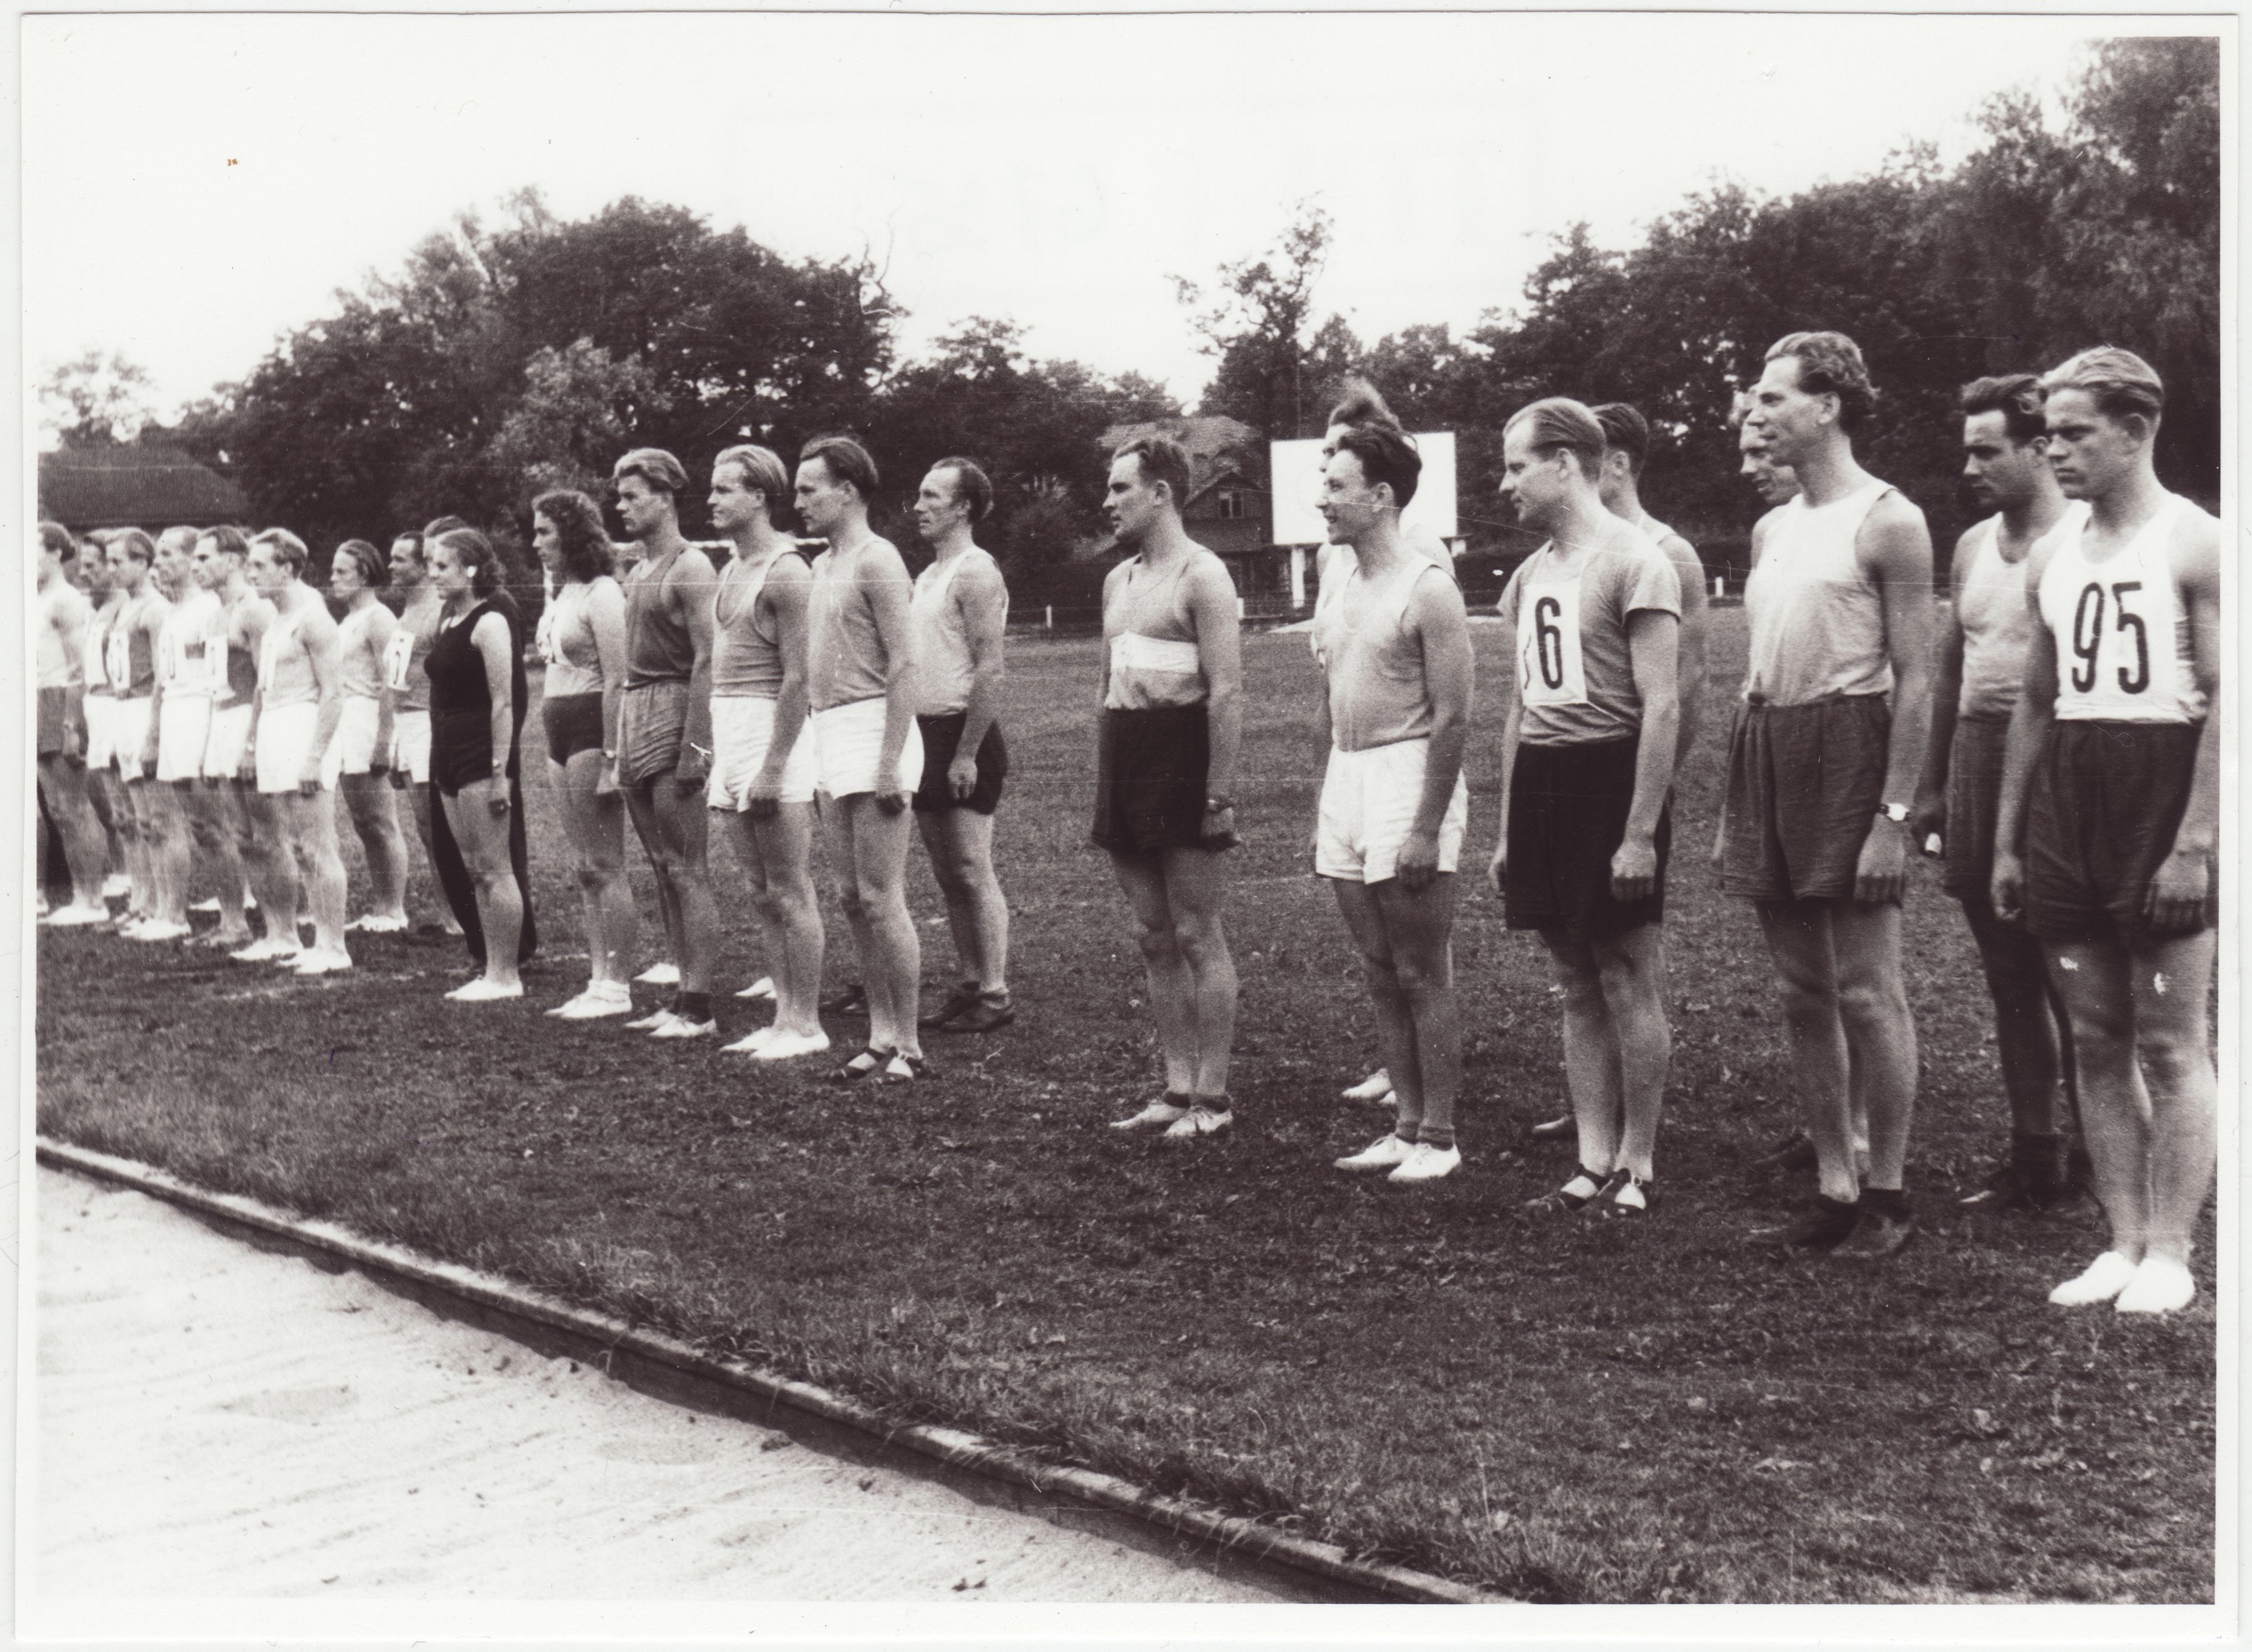 Tallinna sõjaväestatud tuletõrjekomandode kergejõustiku võistluste võitjate autasustamine Dünamo staadionil: võistlejate rivi, 1953.a.